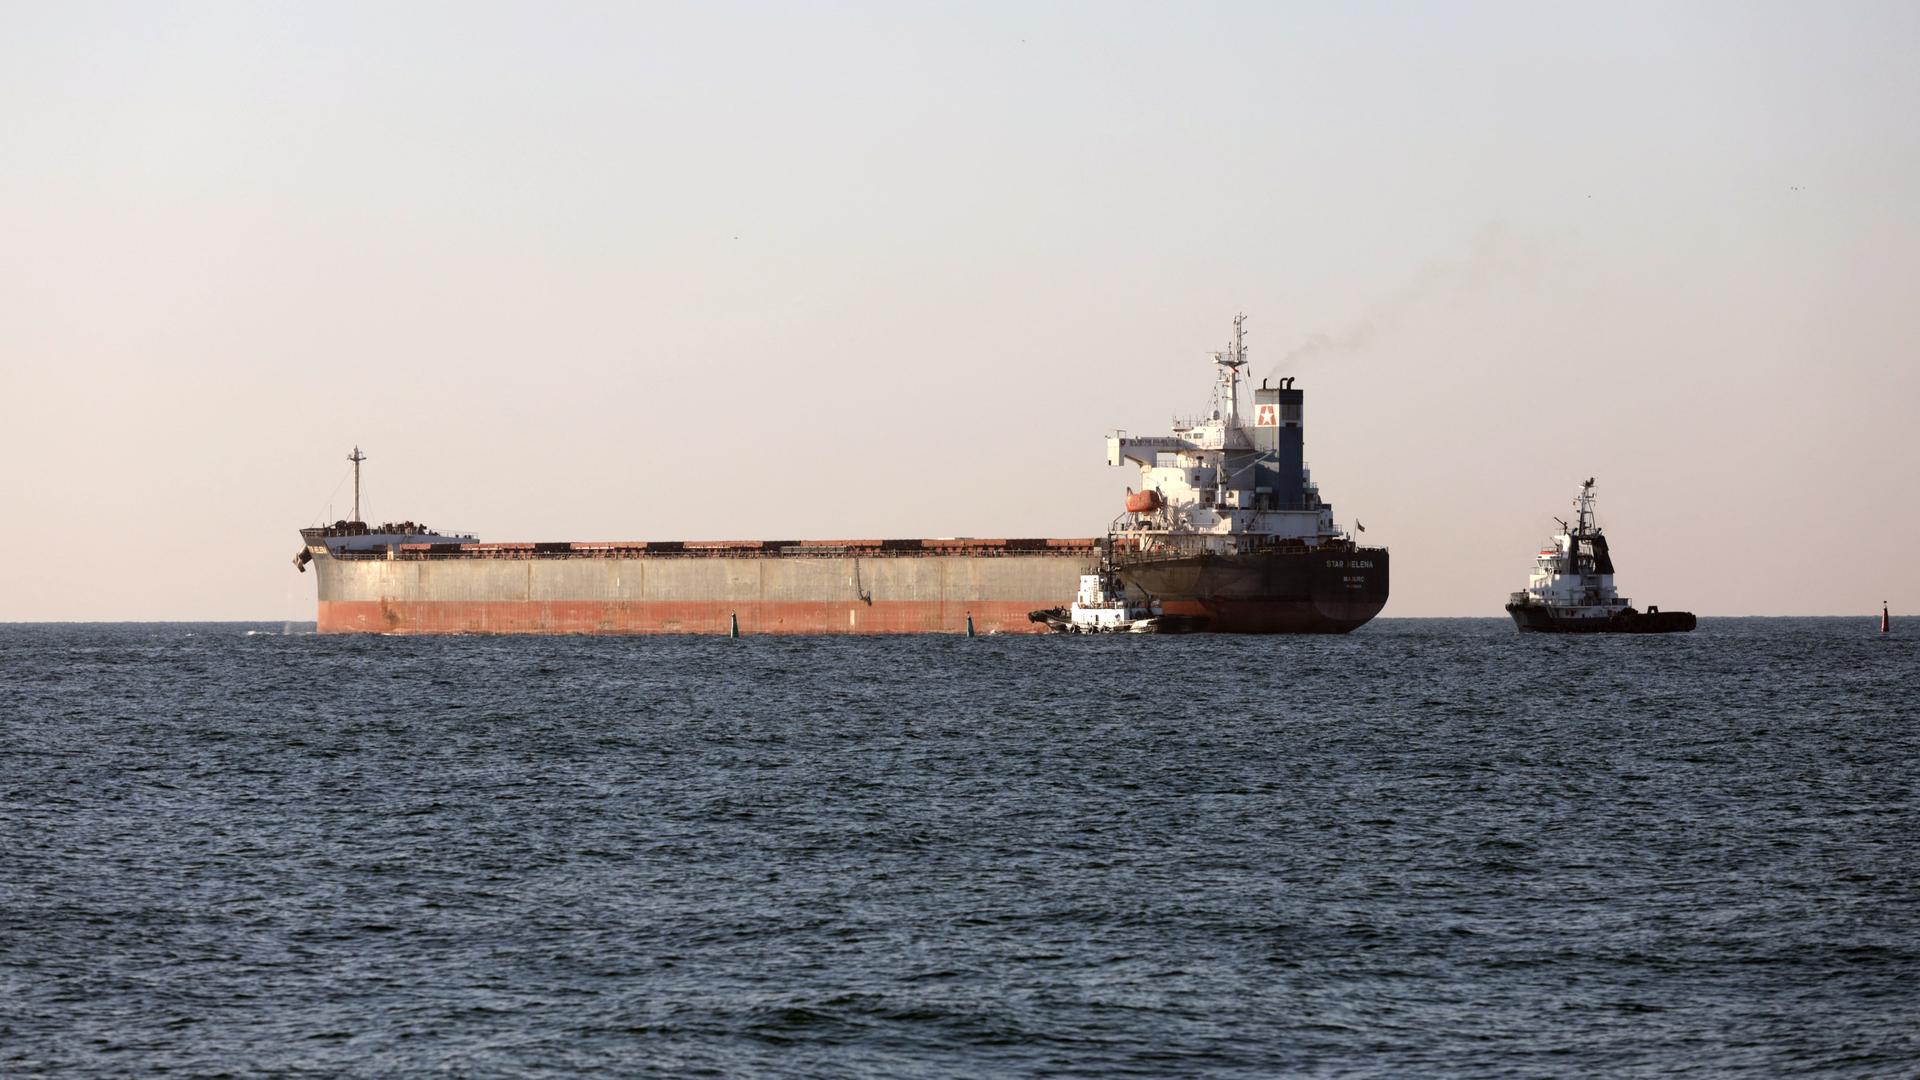 Das Foto zeigt den Frachter "Star Helena", der unter der Flagge der Marshall Inseln fährt und gerade den ukrainischen Hafen von Tschornomorsk verlässt.